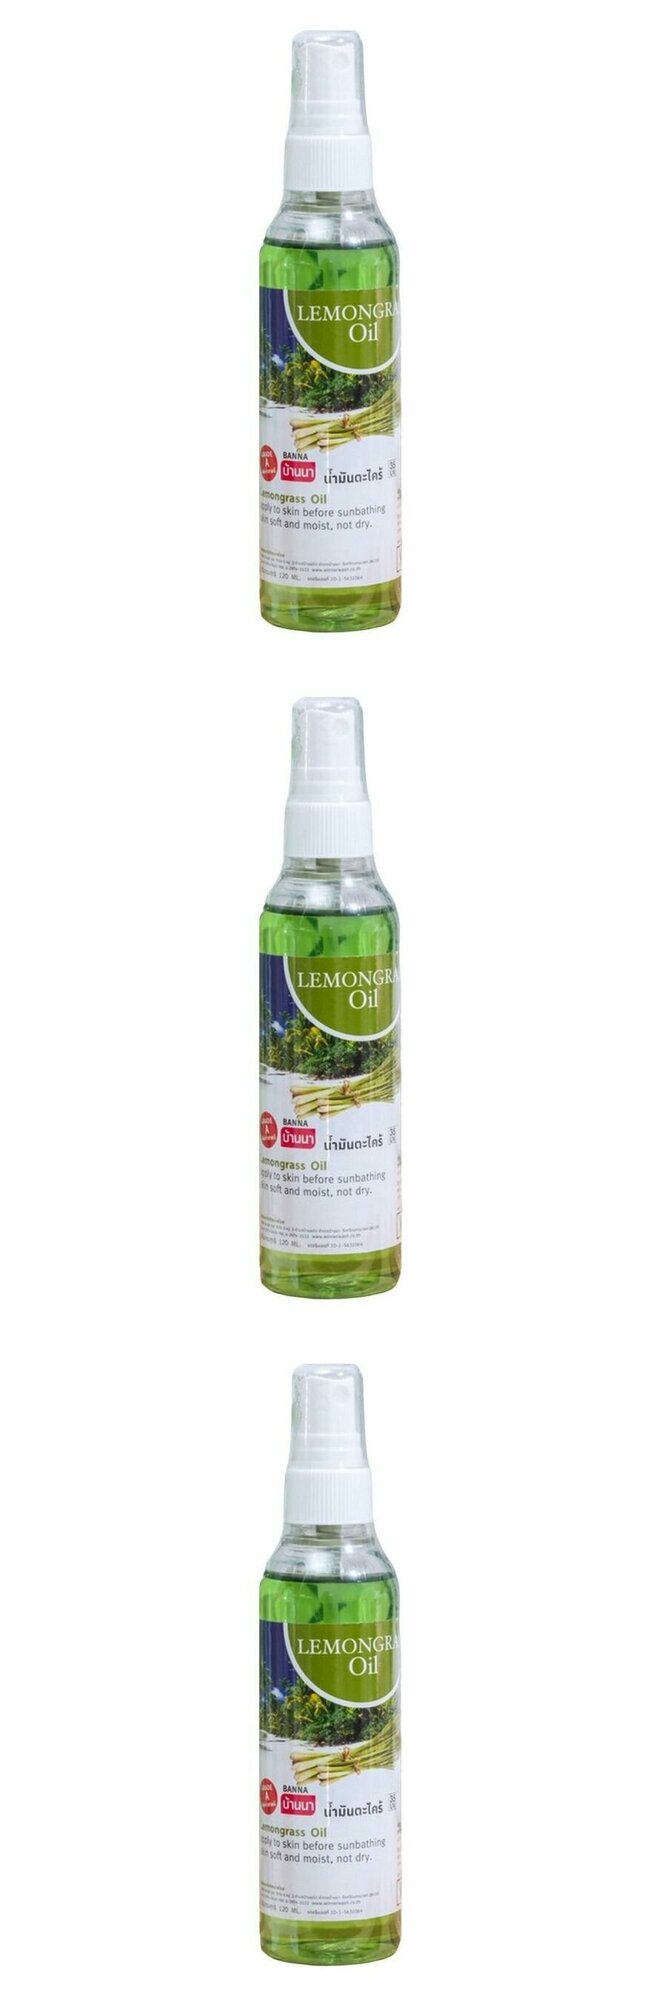 Banna Массажное масло для тела Lemongrass Oil, с экстрактом лемонграсса, 120 мл, 3 шт.